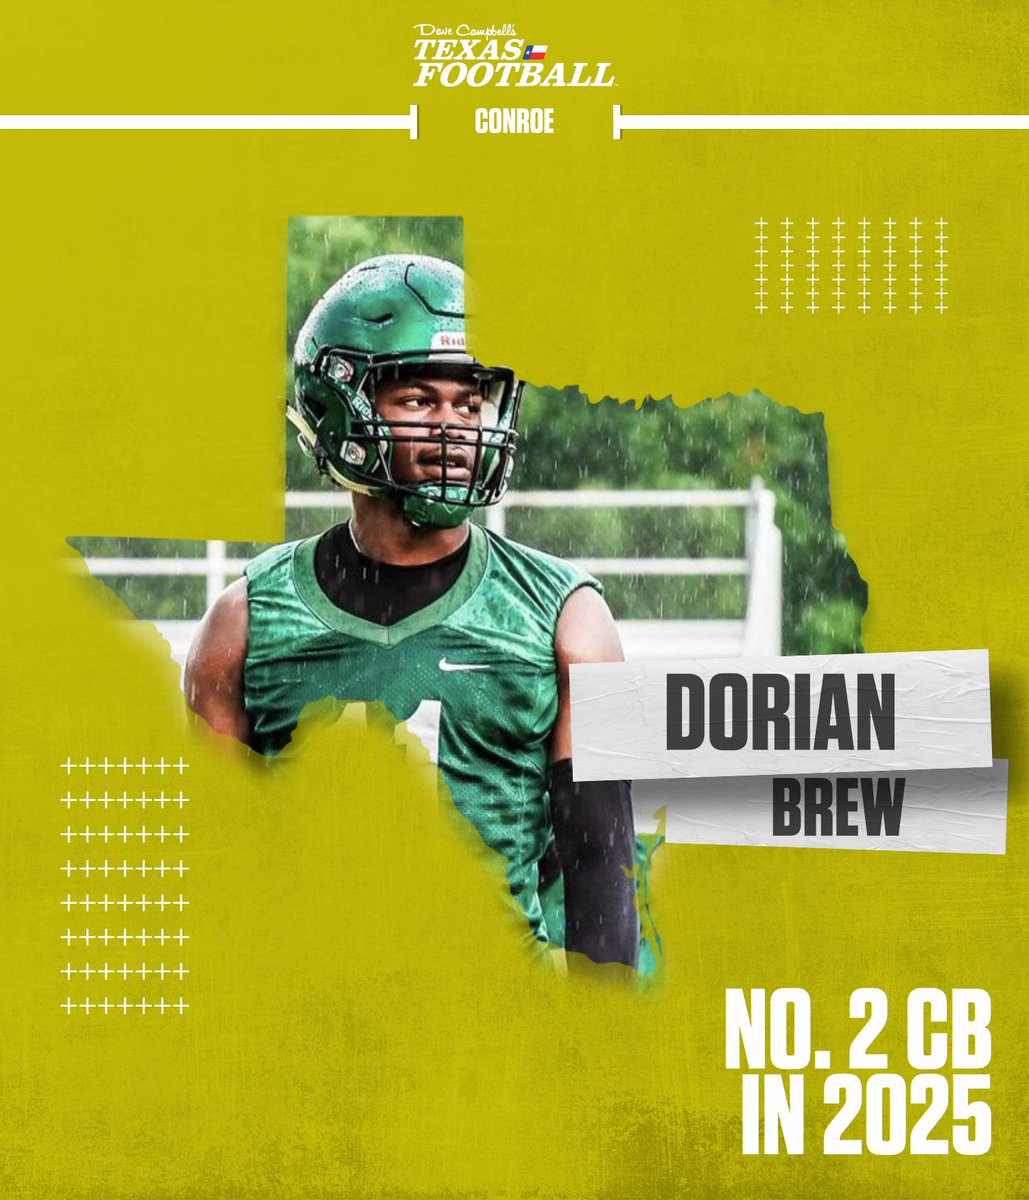 Dorian 🏝️ texasfootball.com/recruiting/pla… @BrewDorian15 | @ConroeTigersFB | #dctf #txhsfb #conroe